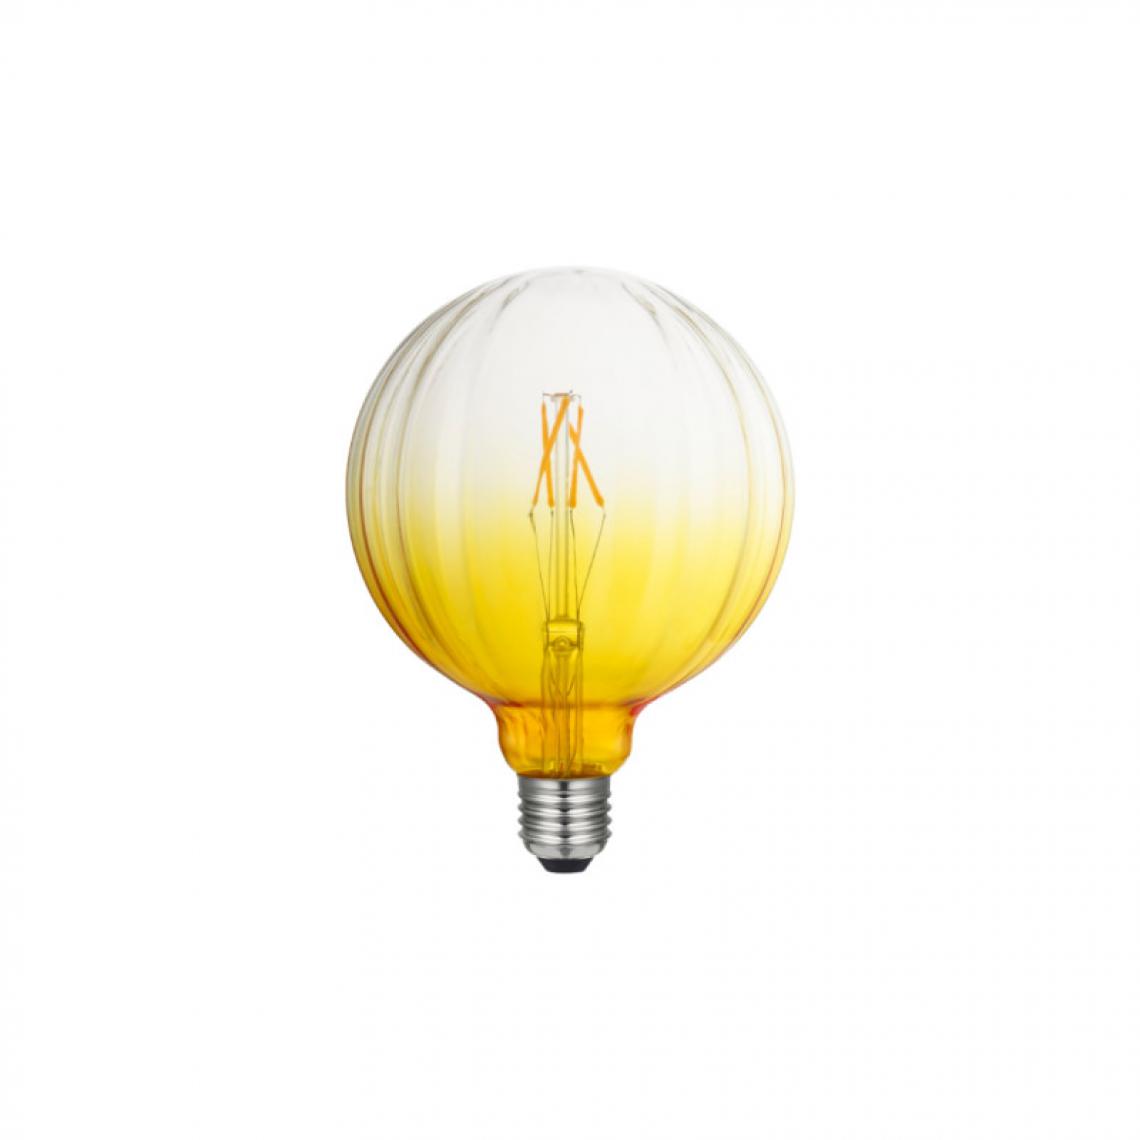 Xxcell - Ampoule LED décorative jaune XXCELL - 4 W - 350 lumens - 2200 K - E27 - Ampoules LED